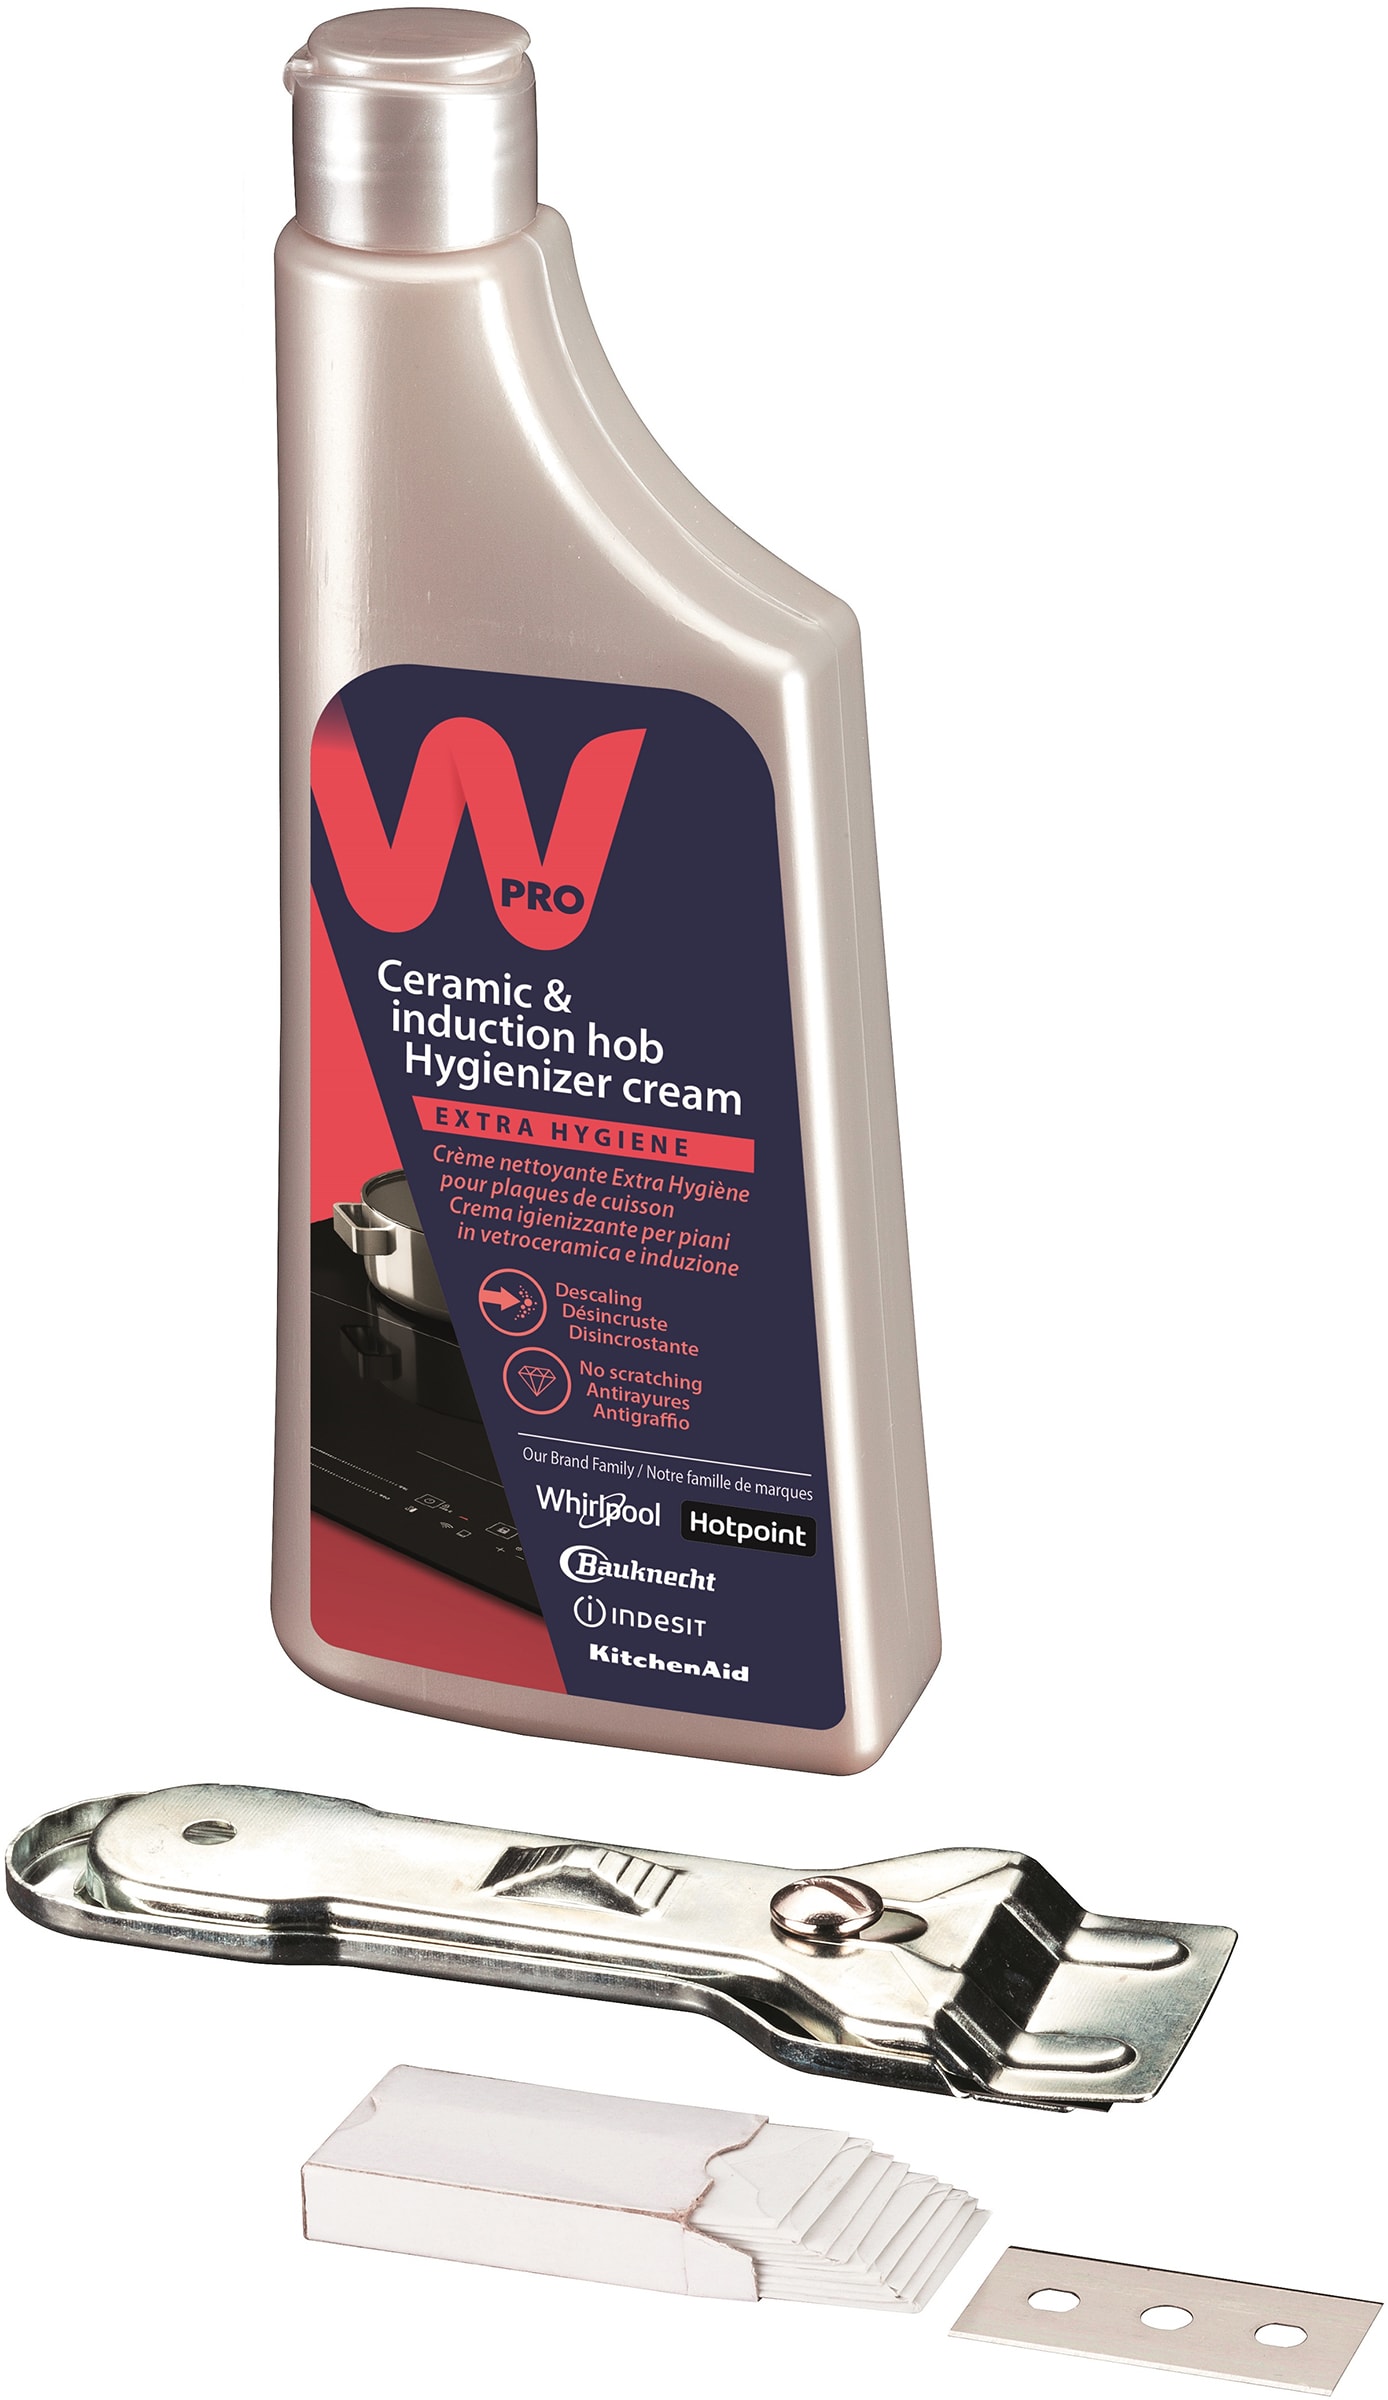 WPRO Kit vitrocéramique   KVC015